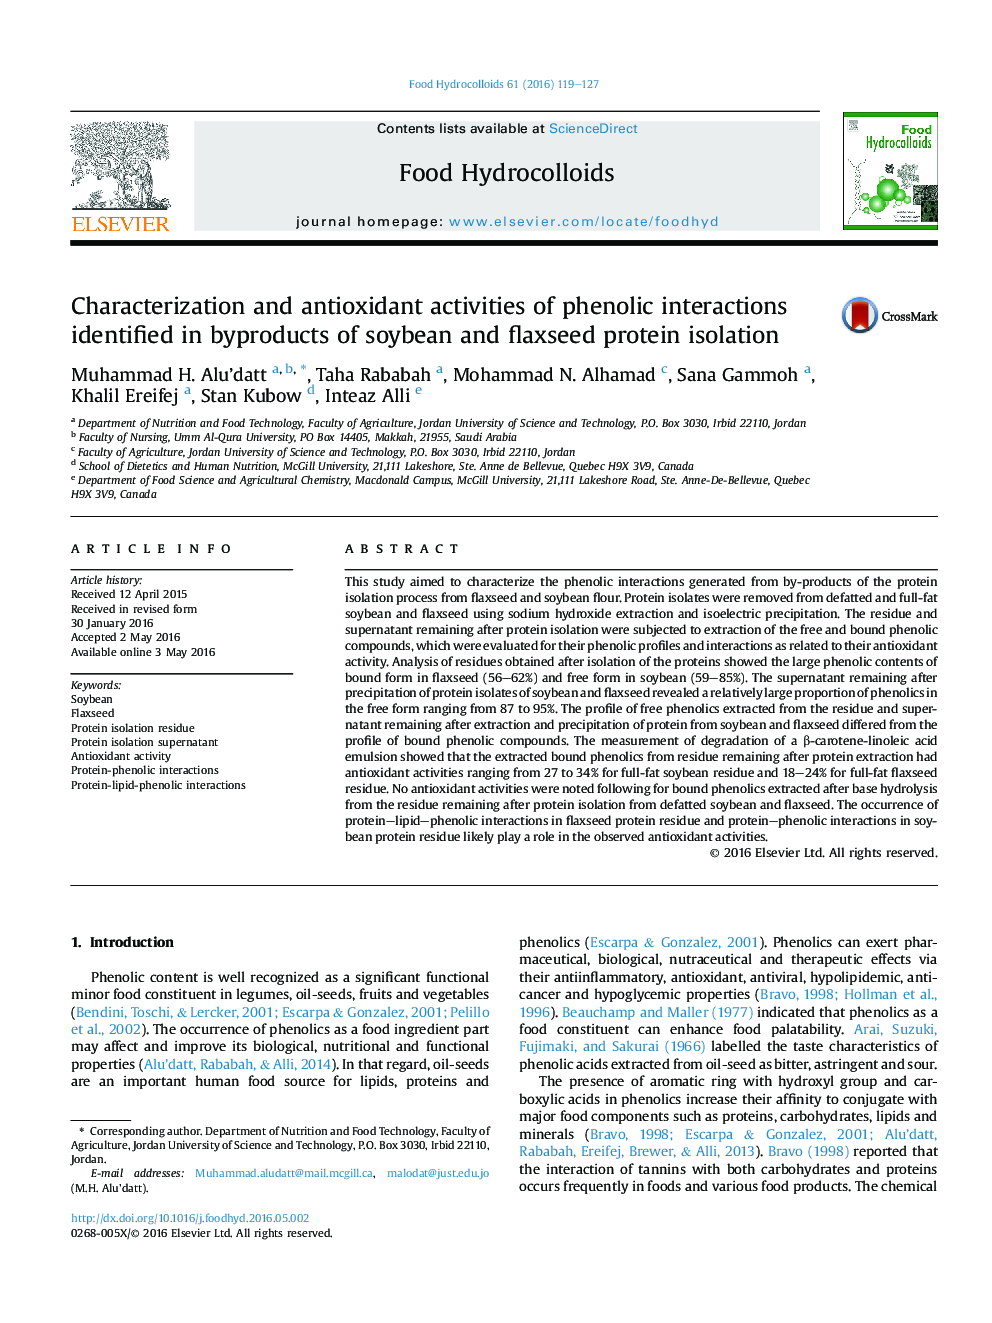 خصوصیات و فعالیت های آنتی اکسیدانی در تعاملات فنولی شناسایی شده در محصولات جانبی جداسازی پروتئین سویا و کتان 